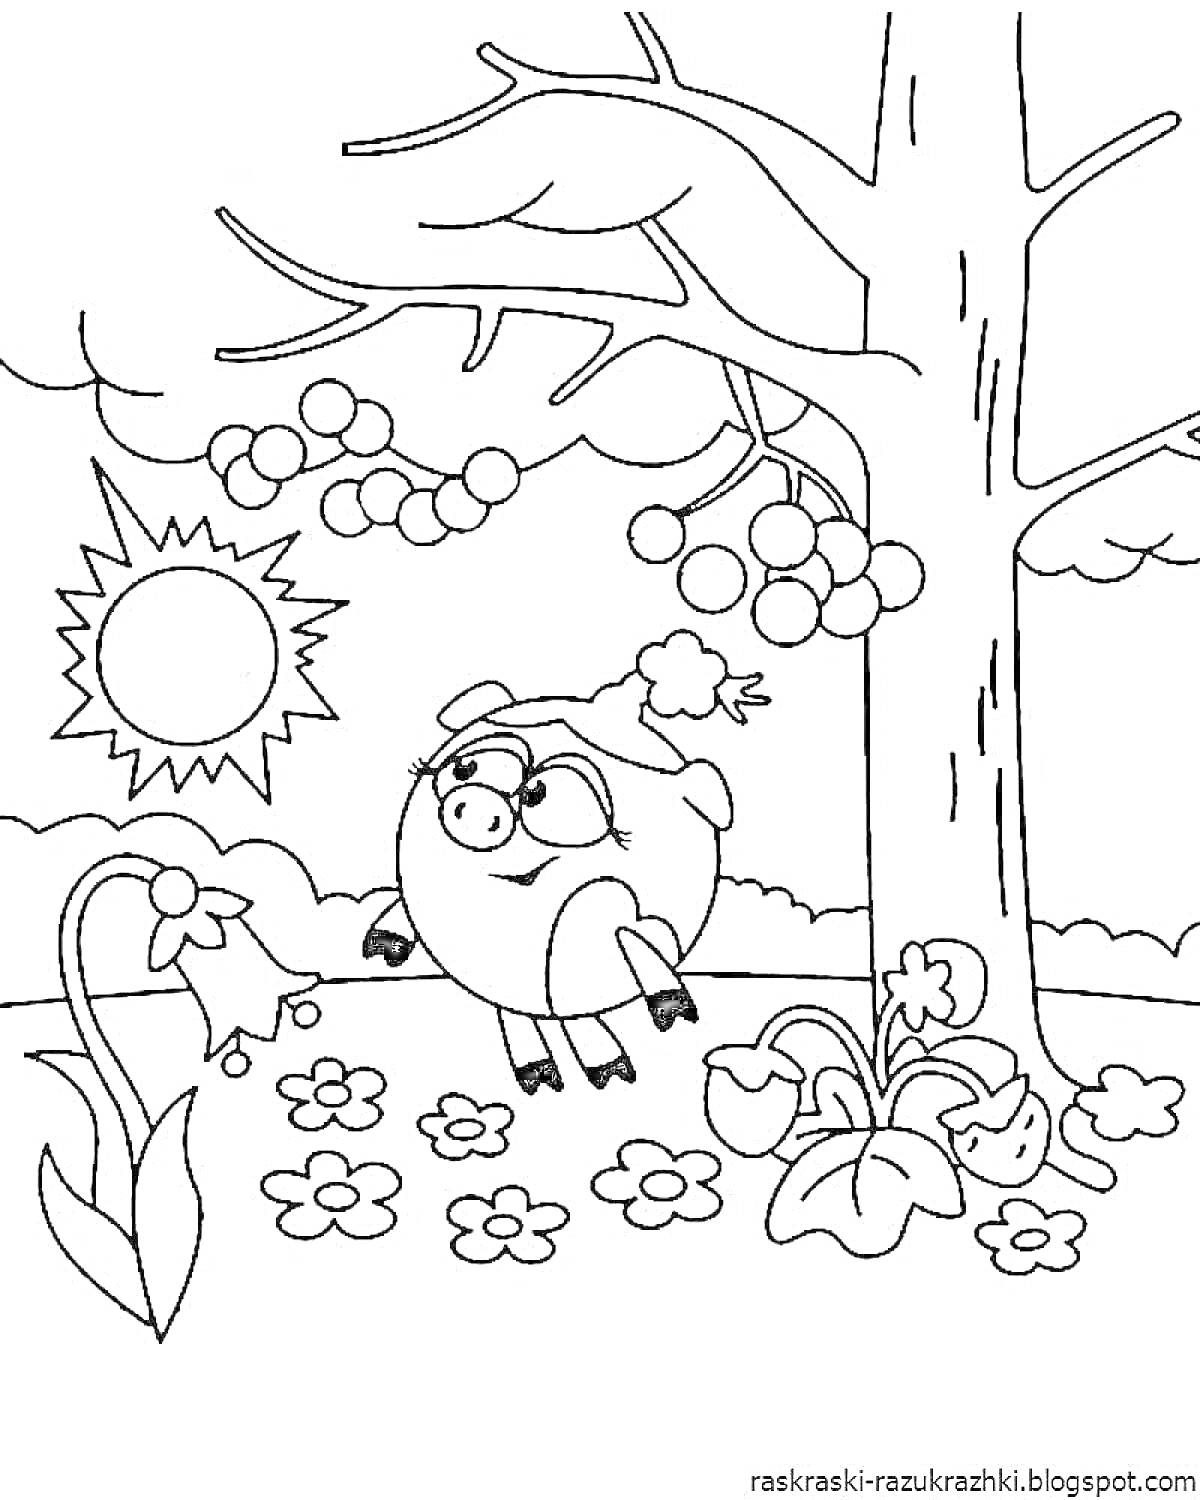 Раскраска Смешарики. Нюша под деревом с цветами и ягодами на фоне солнца